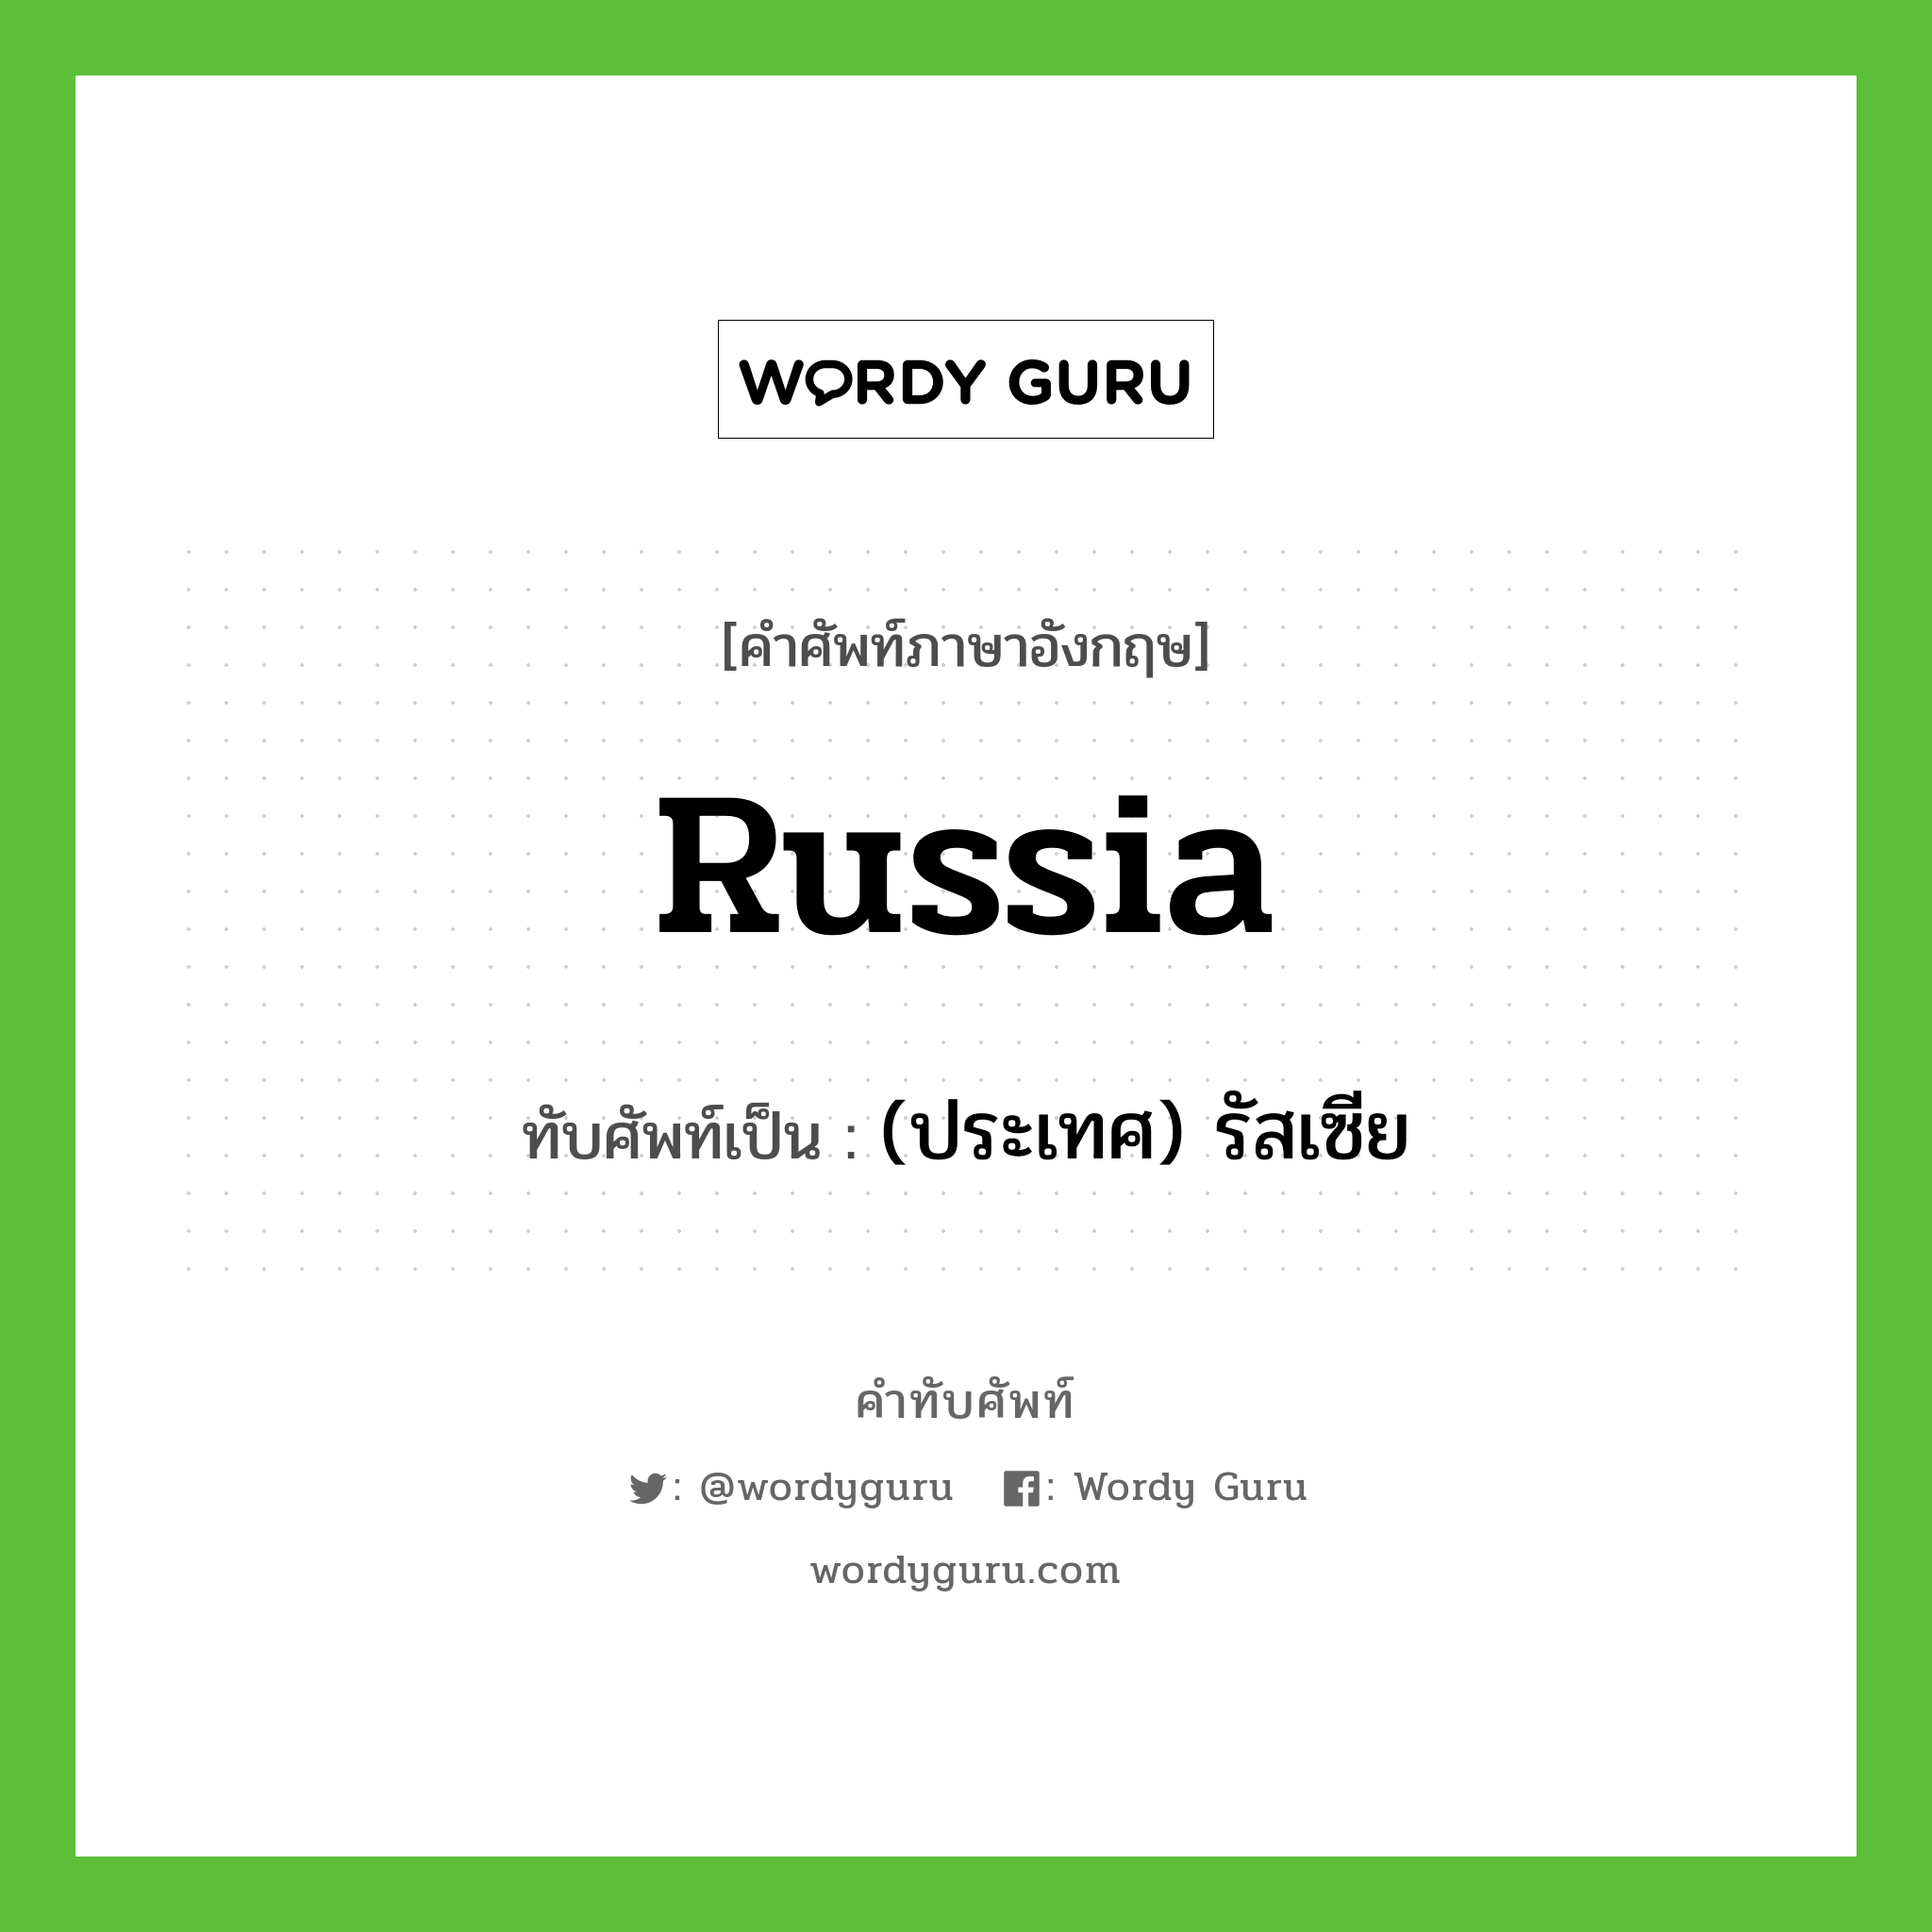 (ประเทศ) รัสเซีย เขียนอย่างไร?, คำศัพท์ภาษาอังกฤษ (ประเทศ) รัสเซีย ทับศัพท์เป็น Russia